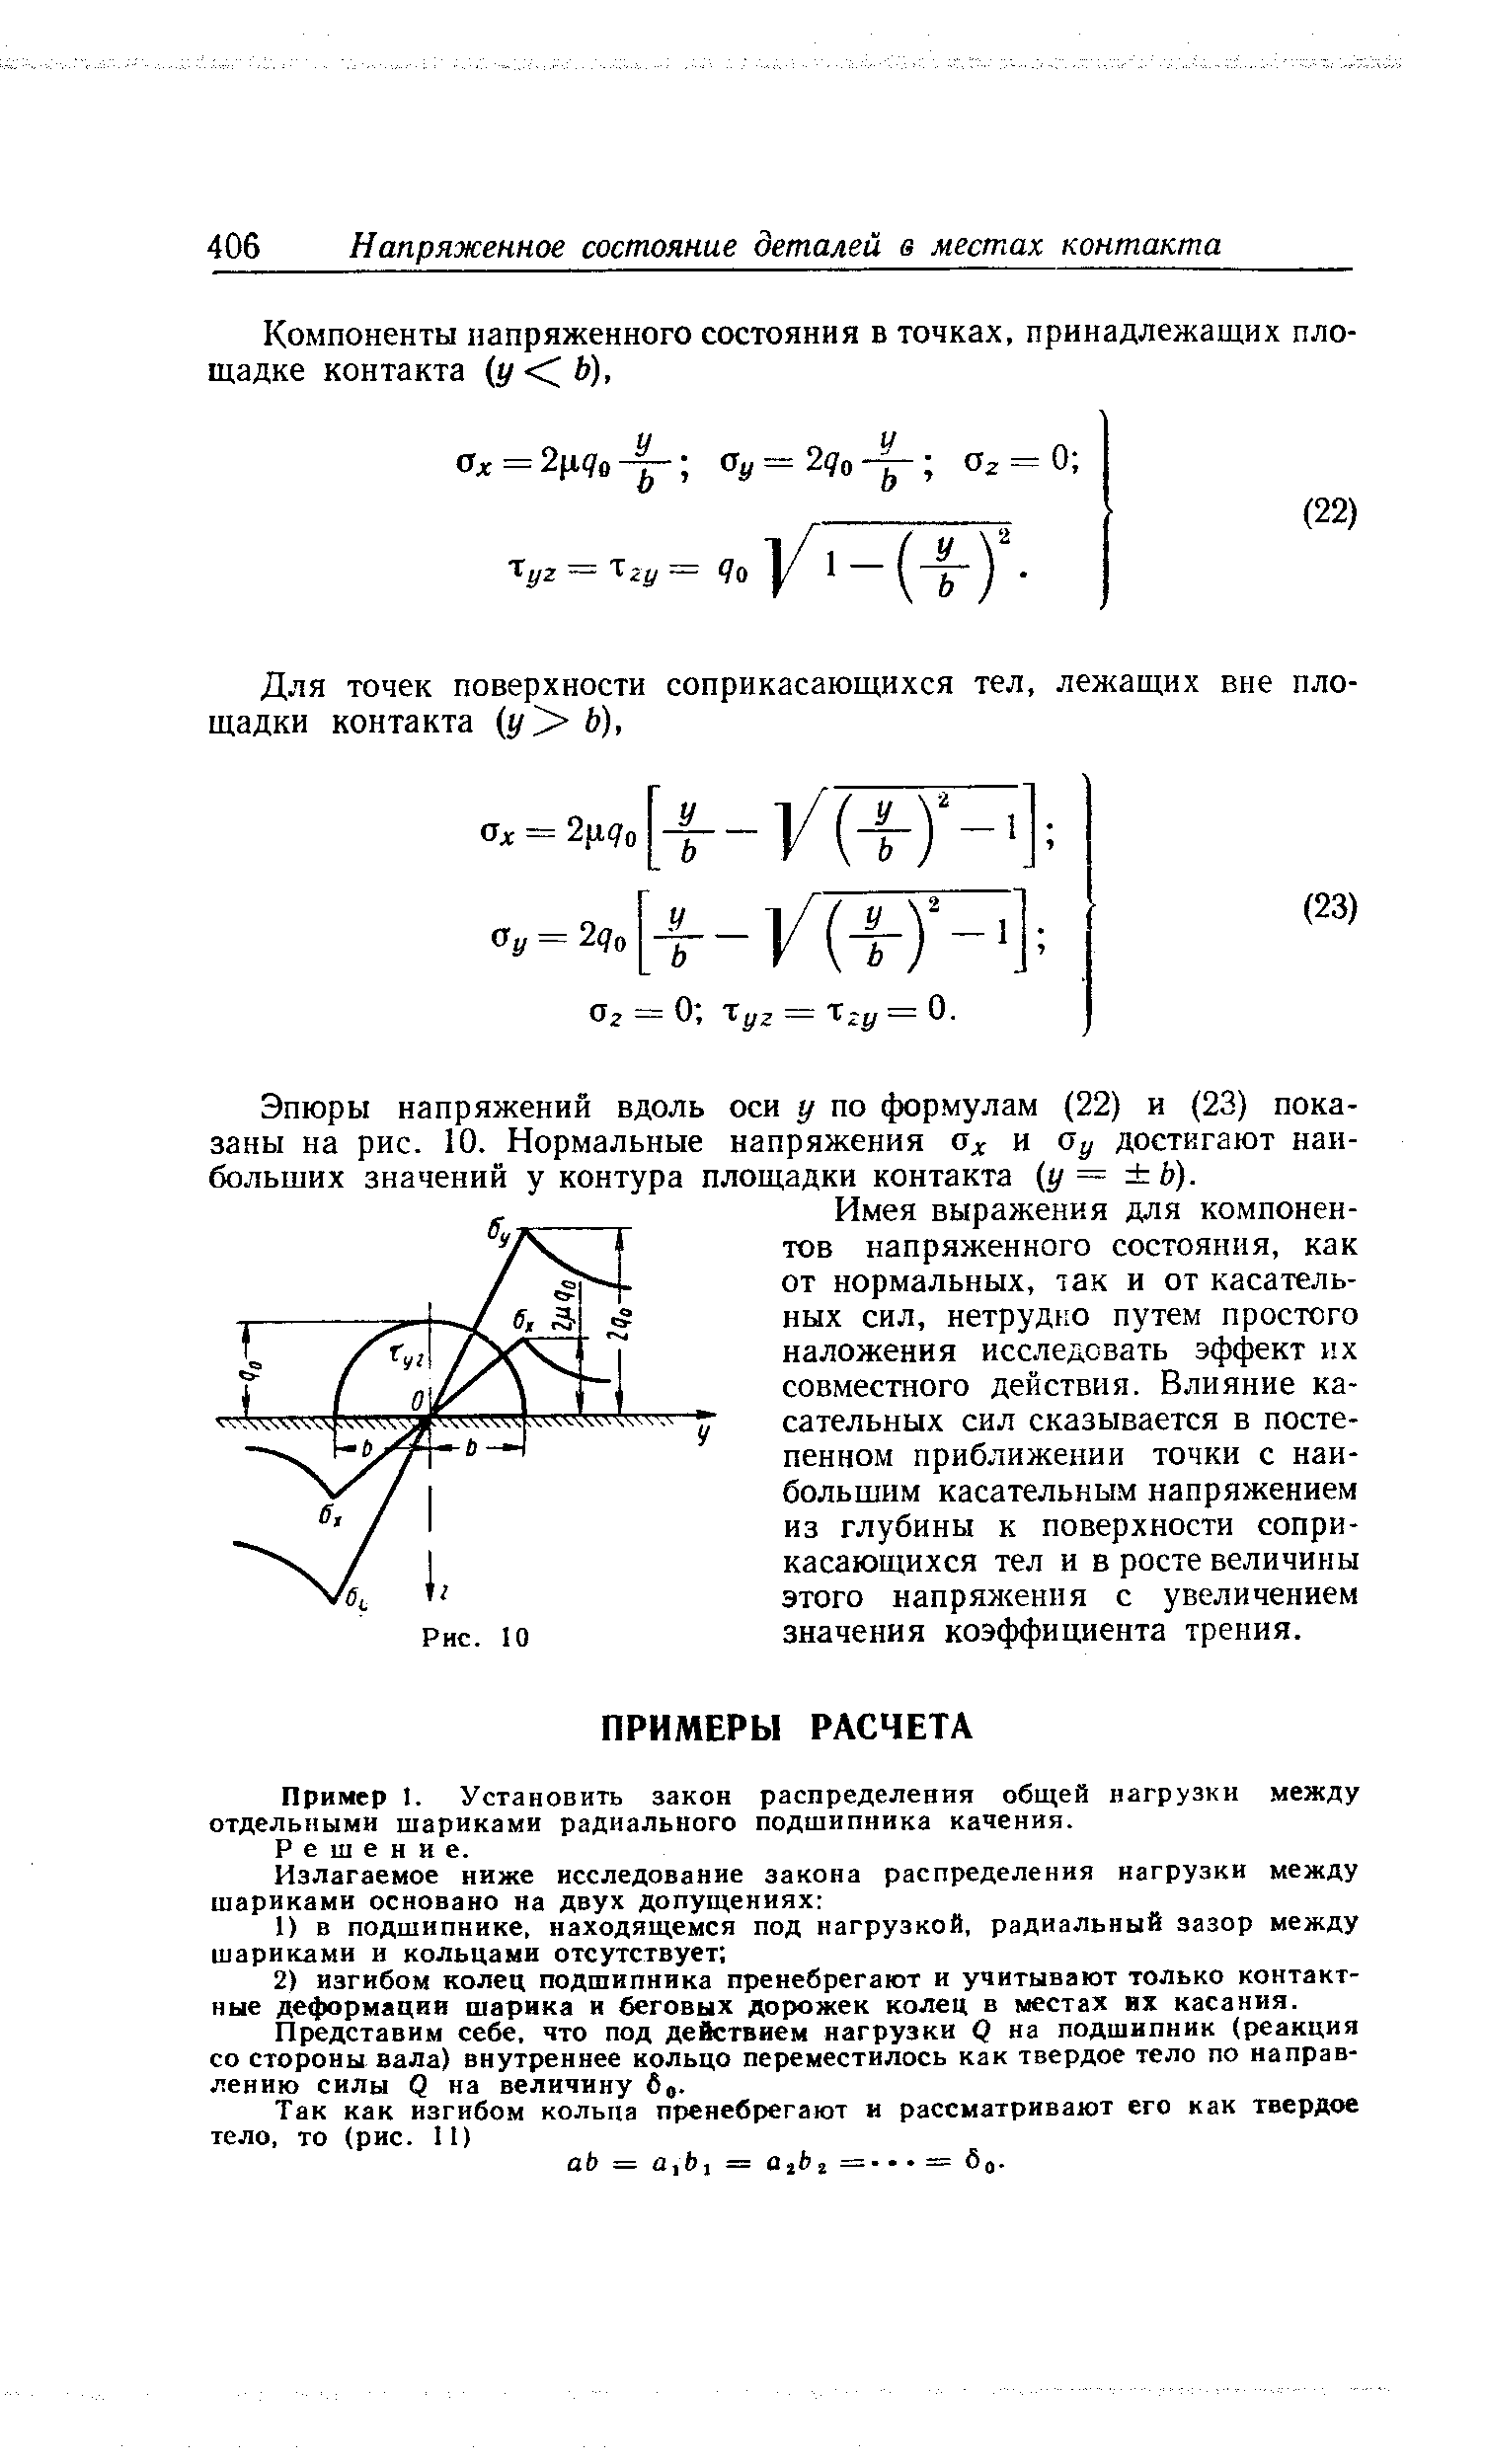 Пример I. Установить закон распределения общей нагрузки между отдельными шариками радиального подшипника качения.
